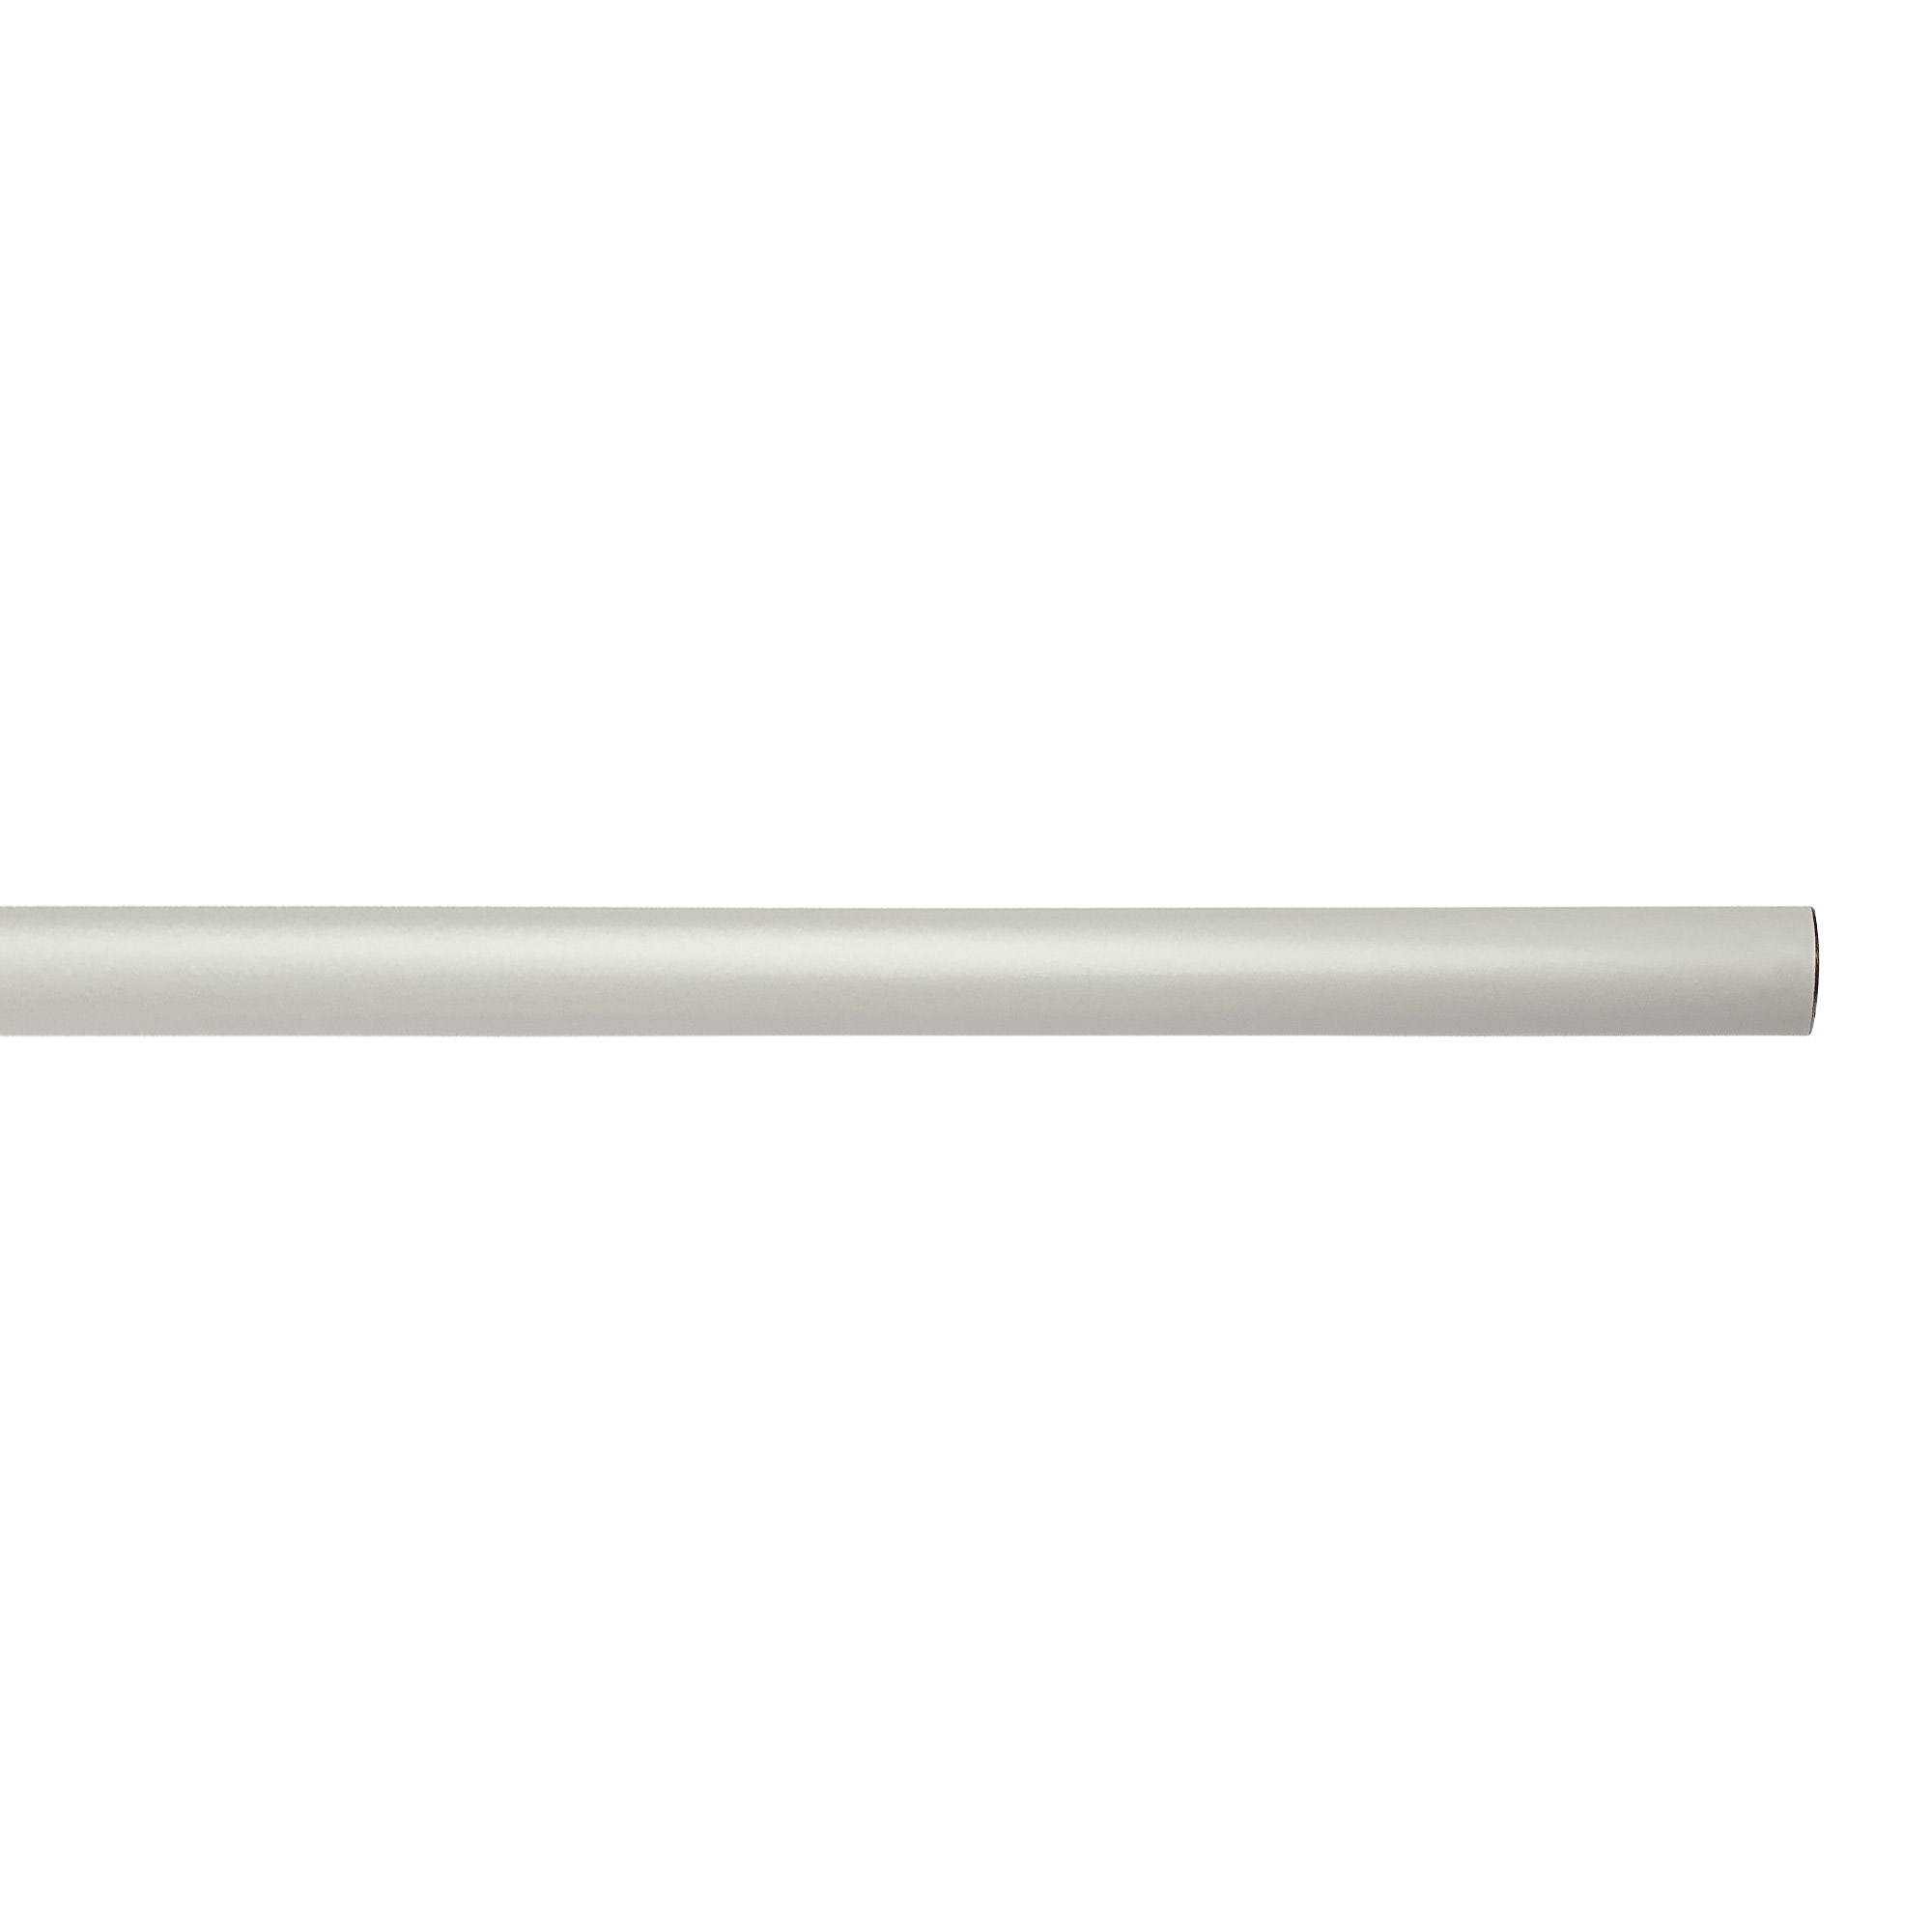 アイアンハンガーパイプ L型-天井吊タイプ H300 ホワイト PS-HB008-66-G141 水平パイプは3サイズから選択可能です